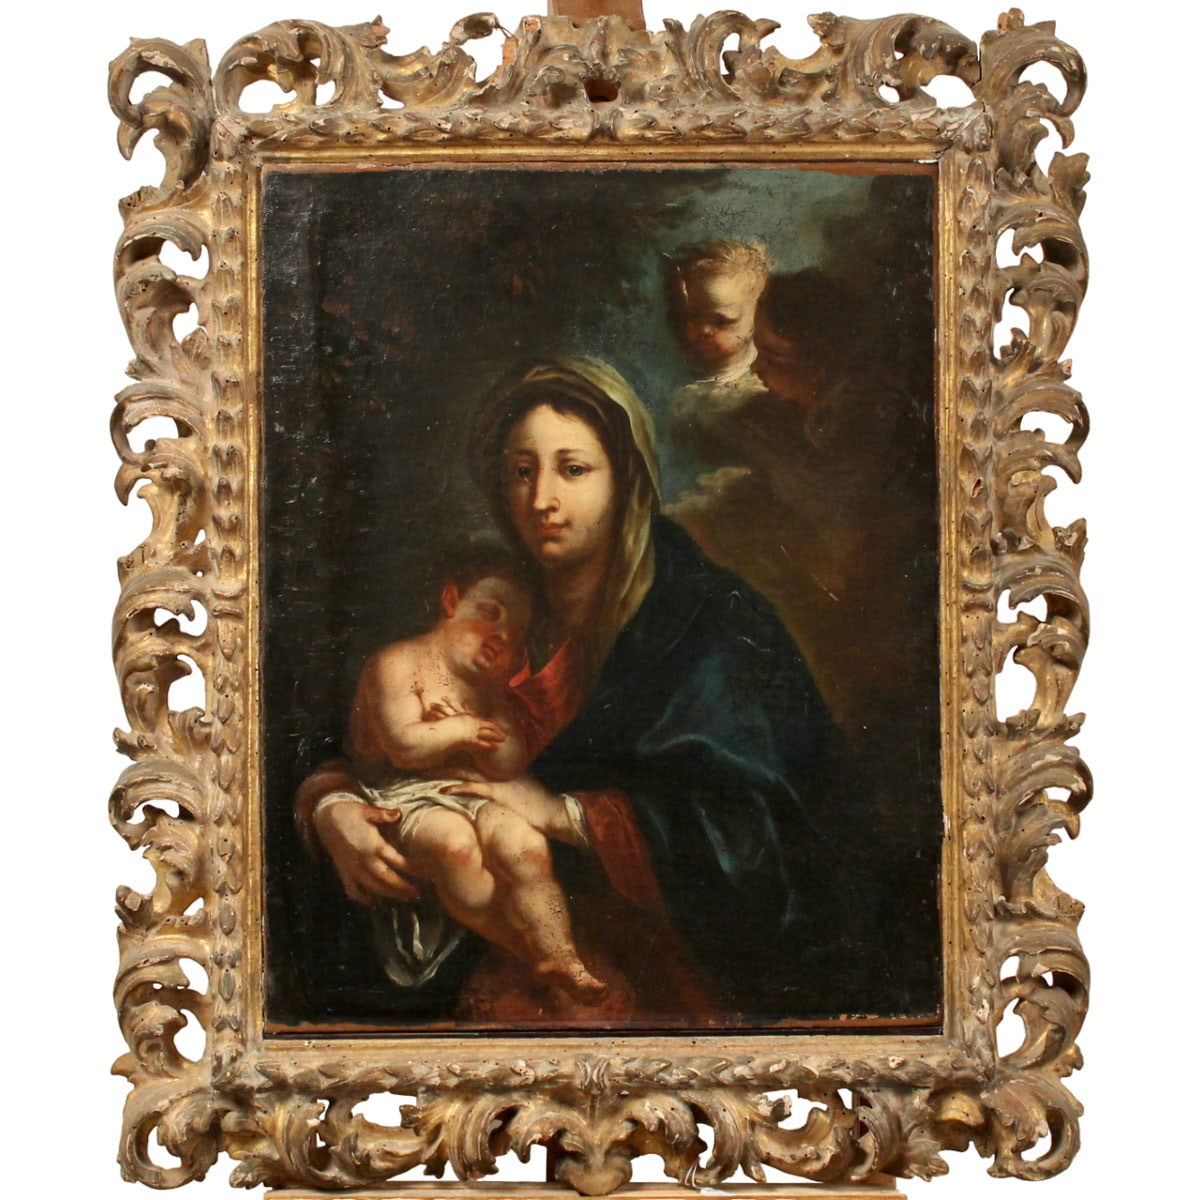 Scuola napoletana della fine del secolo XVII  "La Madonna con il Bambino" - Neapolitan school of the end of the 17th century "The Madonna and Child"